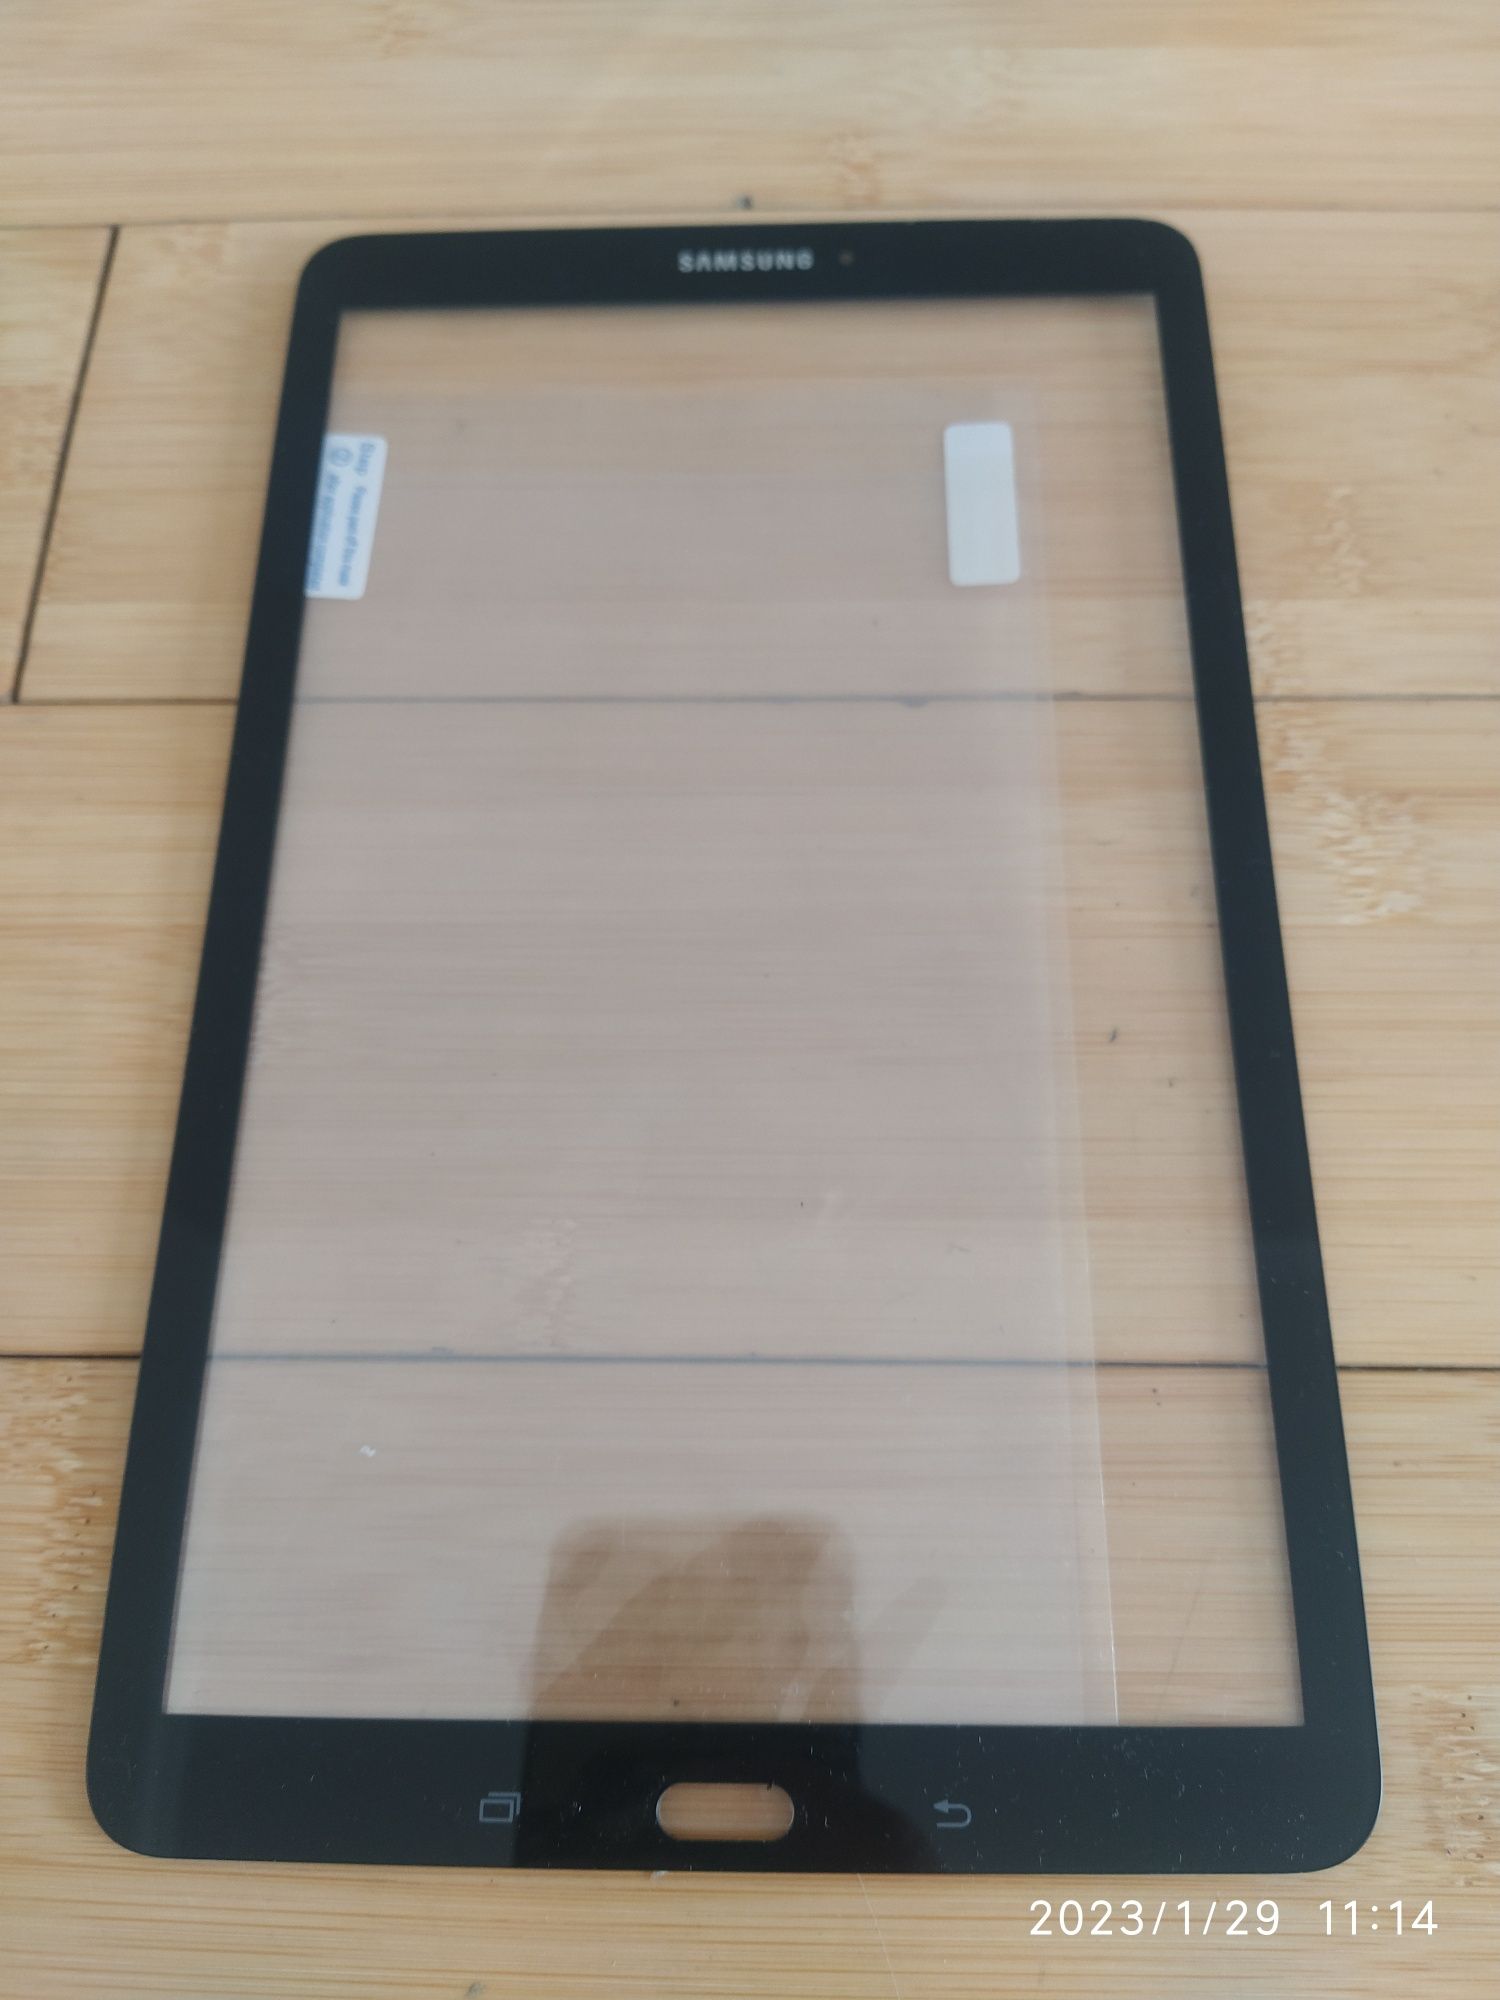 Samsung Galaxy Tab E 9.6 SM-T560, SM-T561